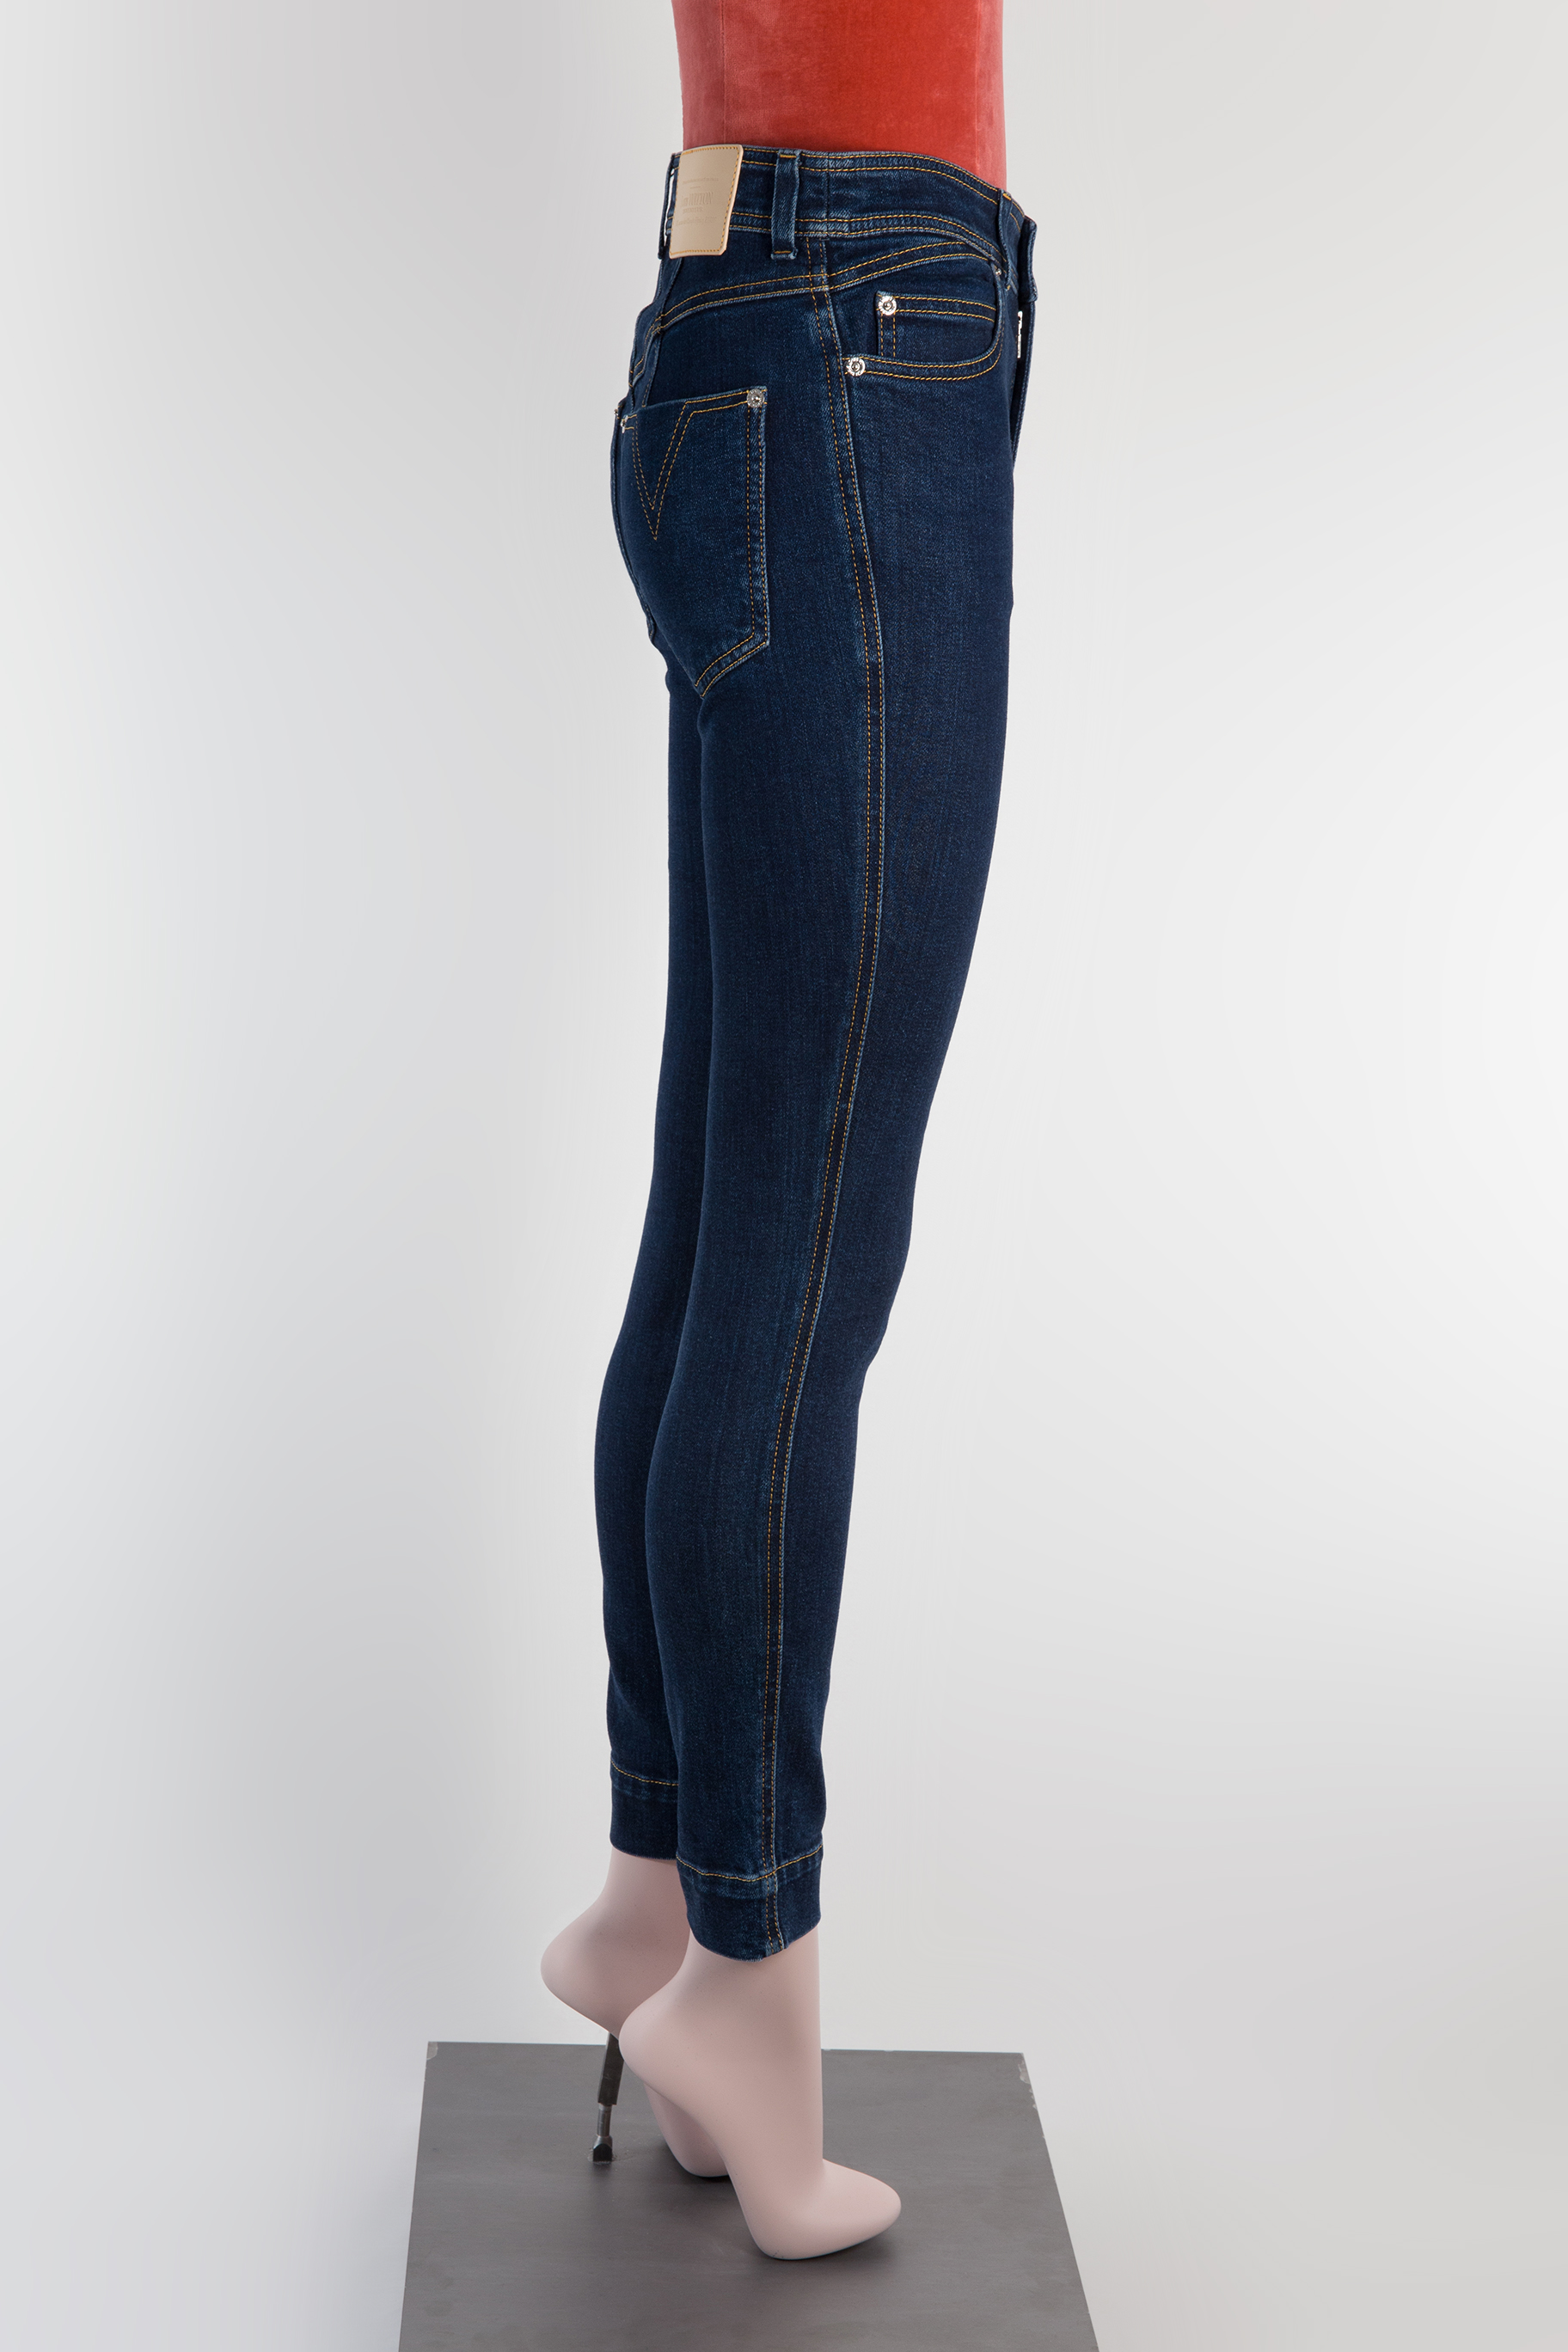 Louis Vuitton Jeans, FR36 - Huntessa Luxury Online Consignment Boutique